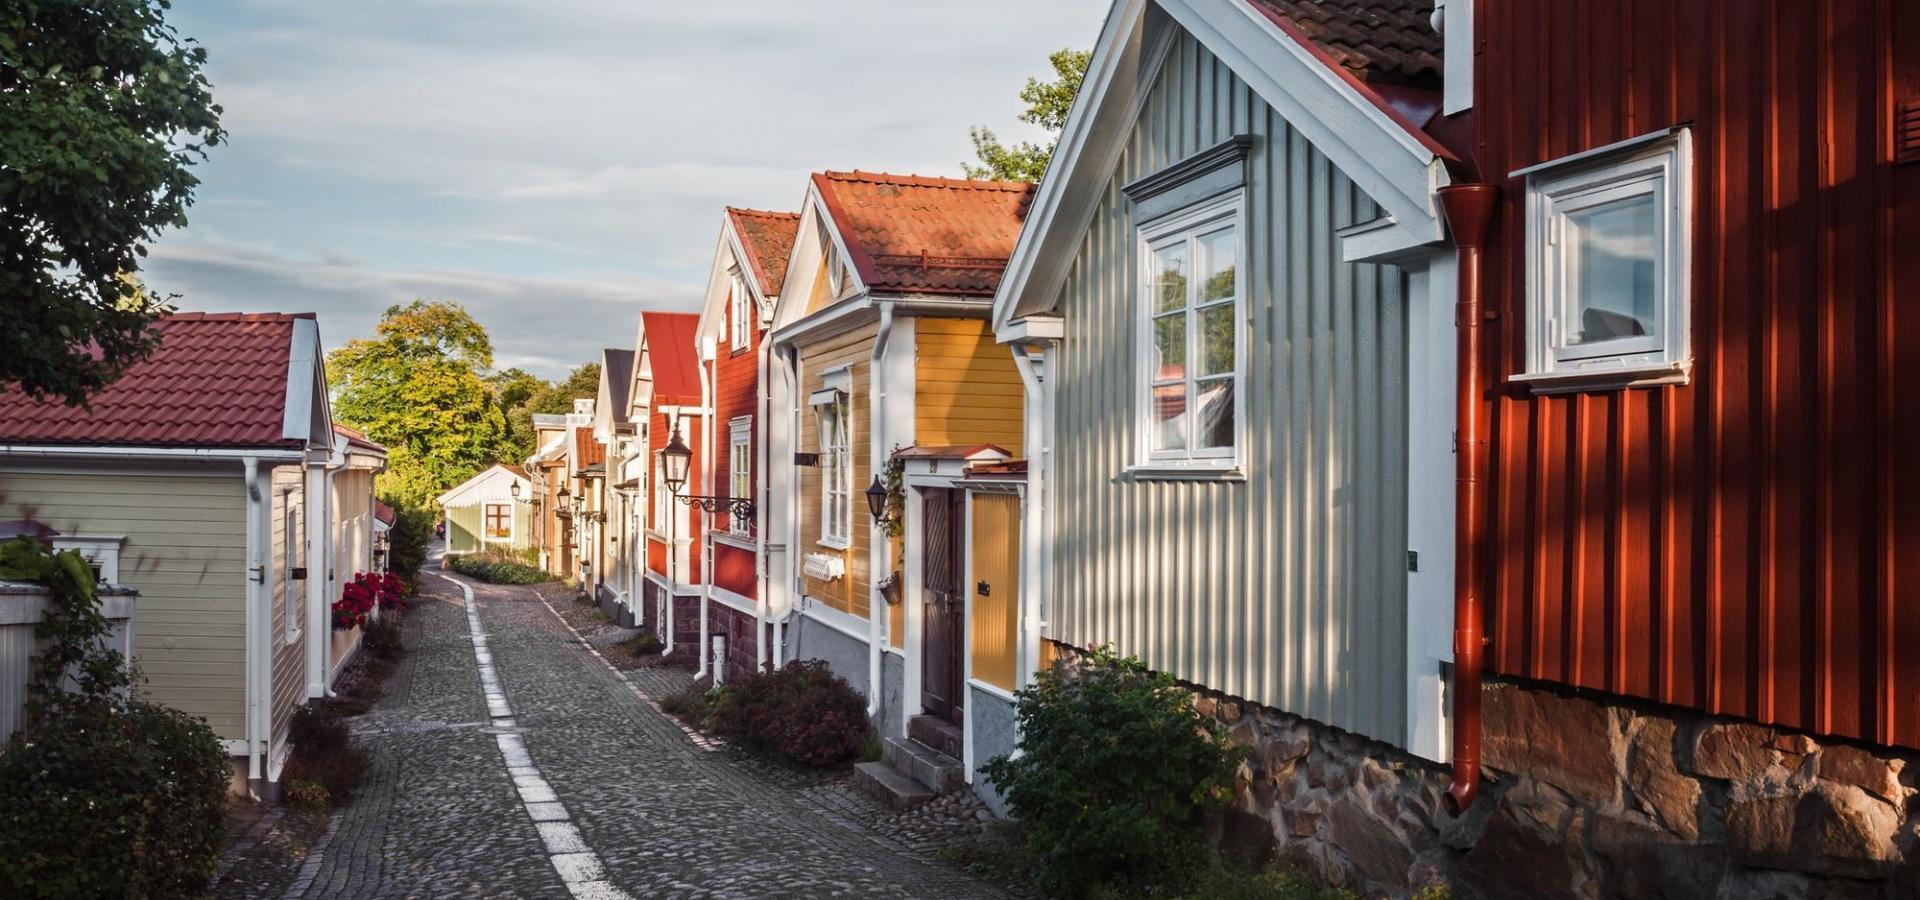 Een geplaveide straat strekt zich uit tussen pastelkleurige houten huizen.